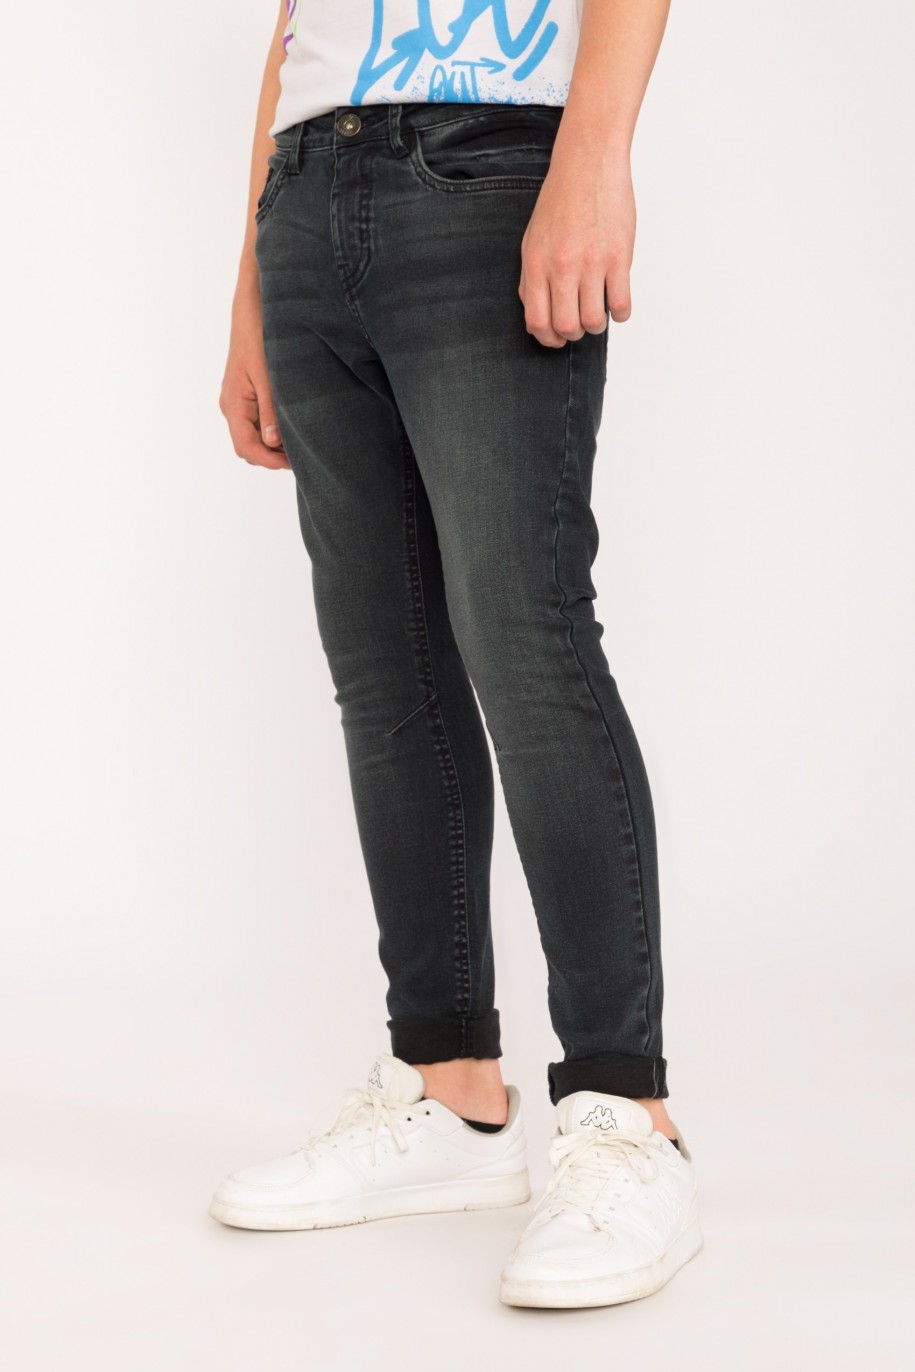 Granatowe jeansowe spodnie dla chłopaka Regular - 29518